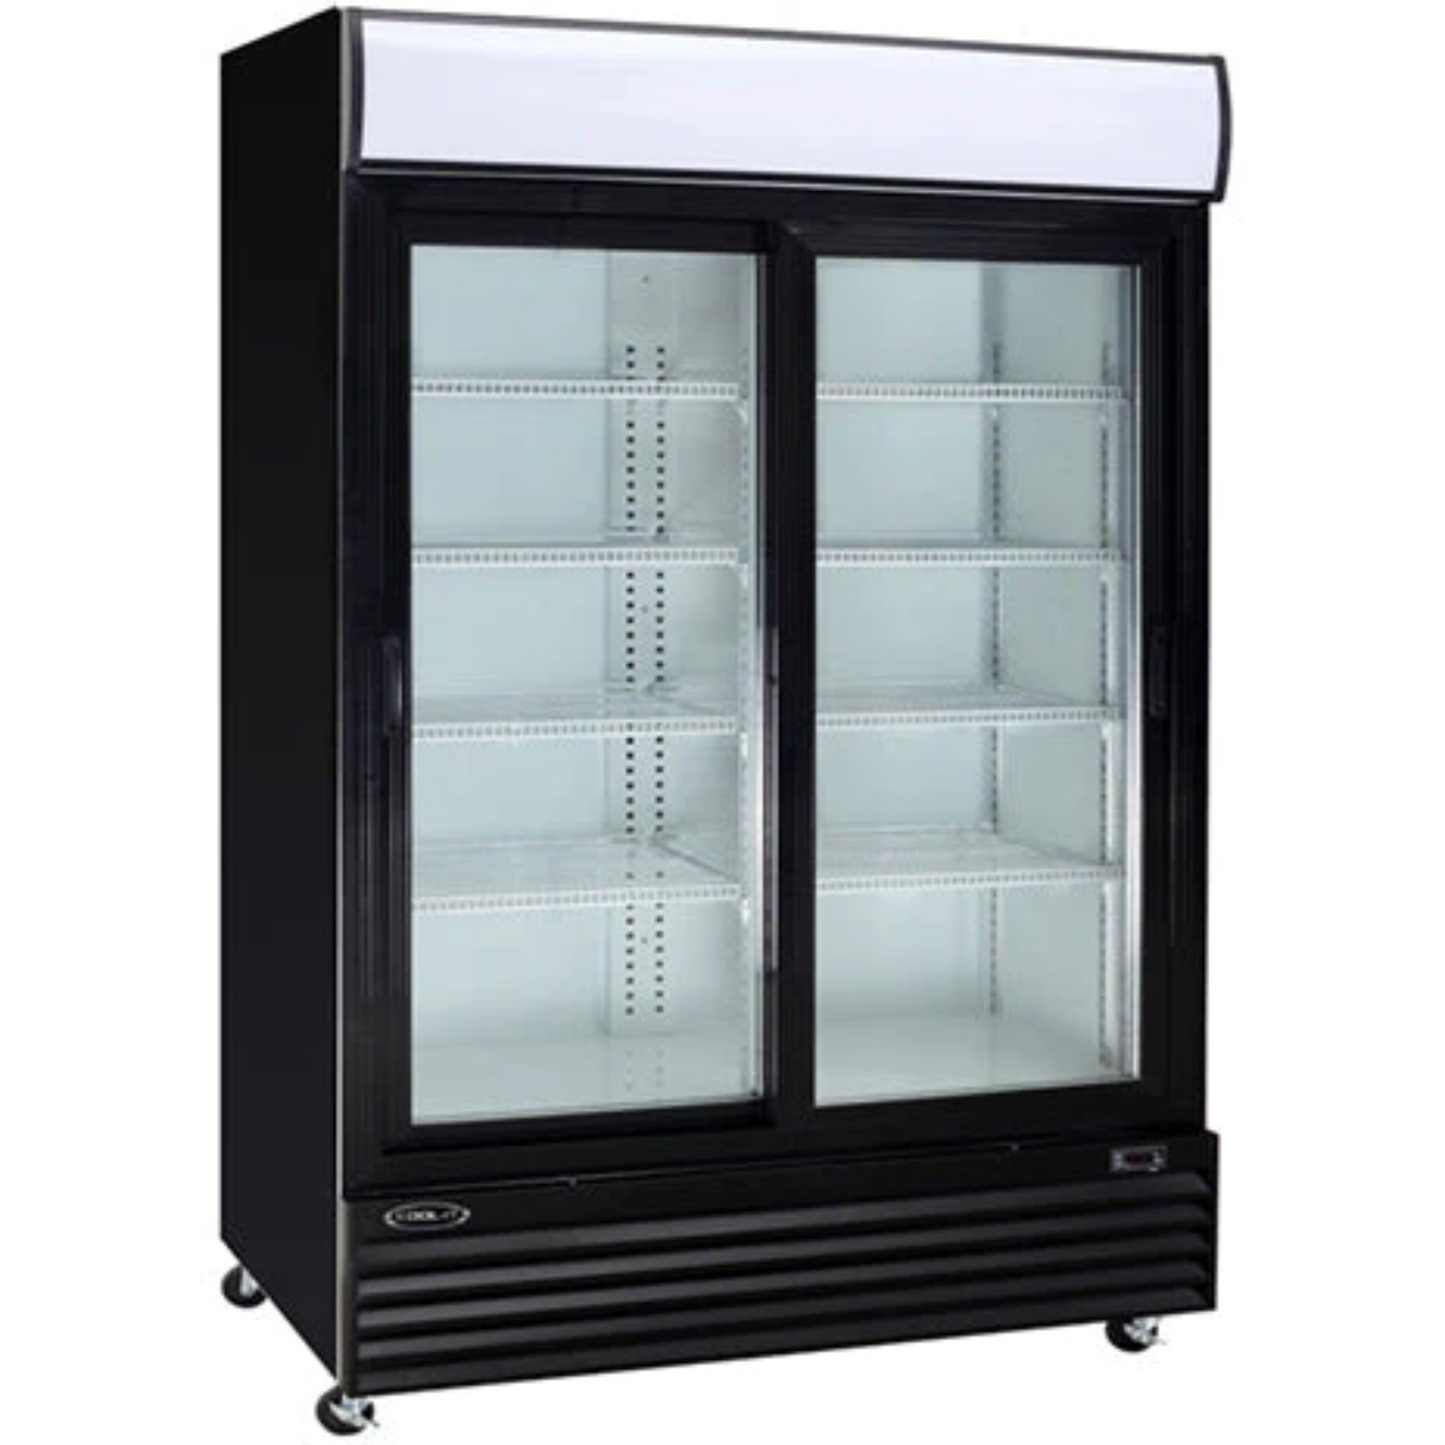 Kool-It KSM-50 52" Double Sliding Glass Door Merchandiser Refrigerator